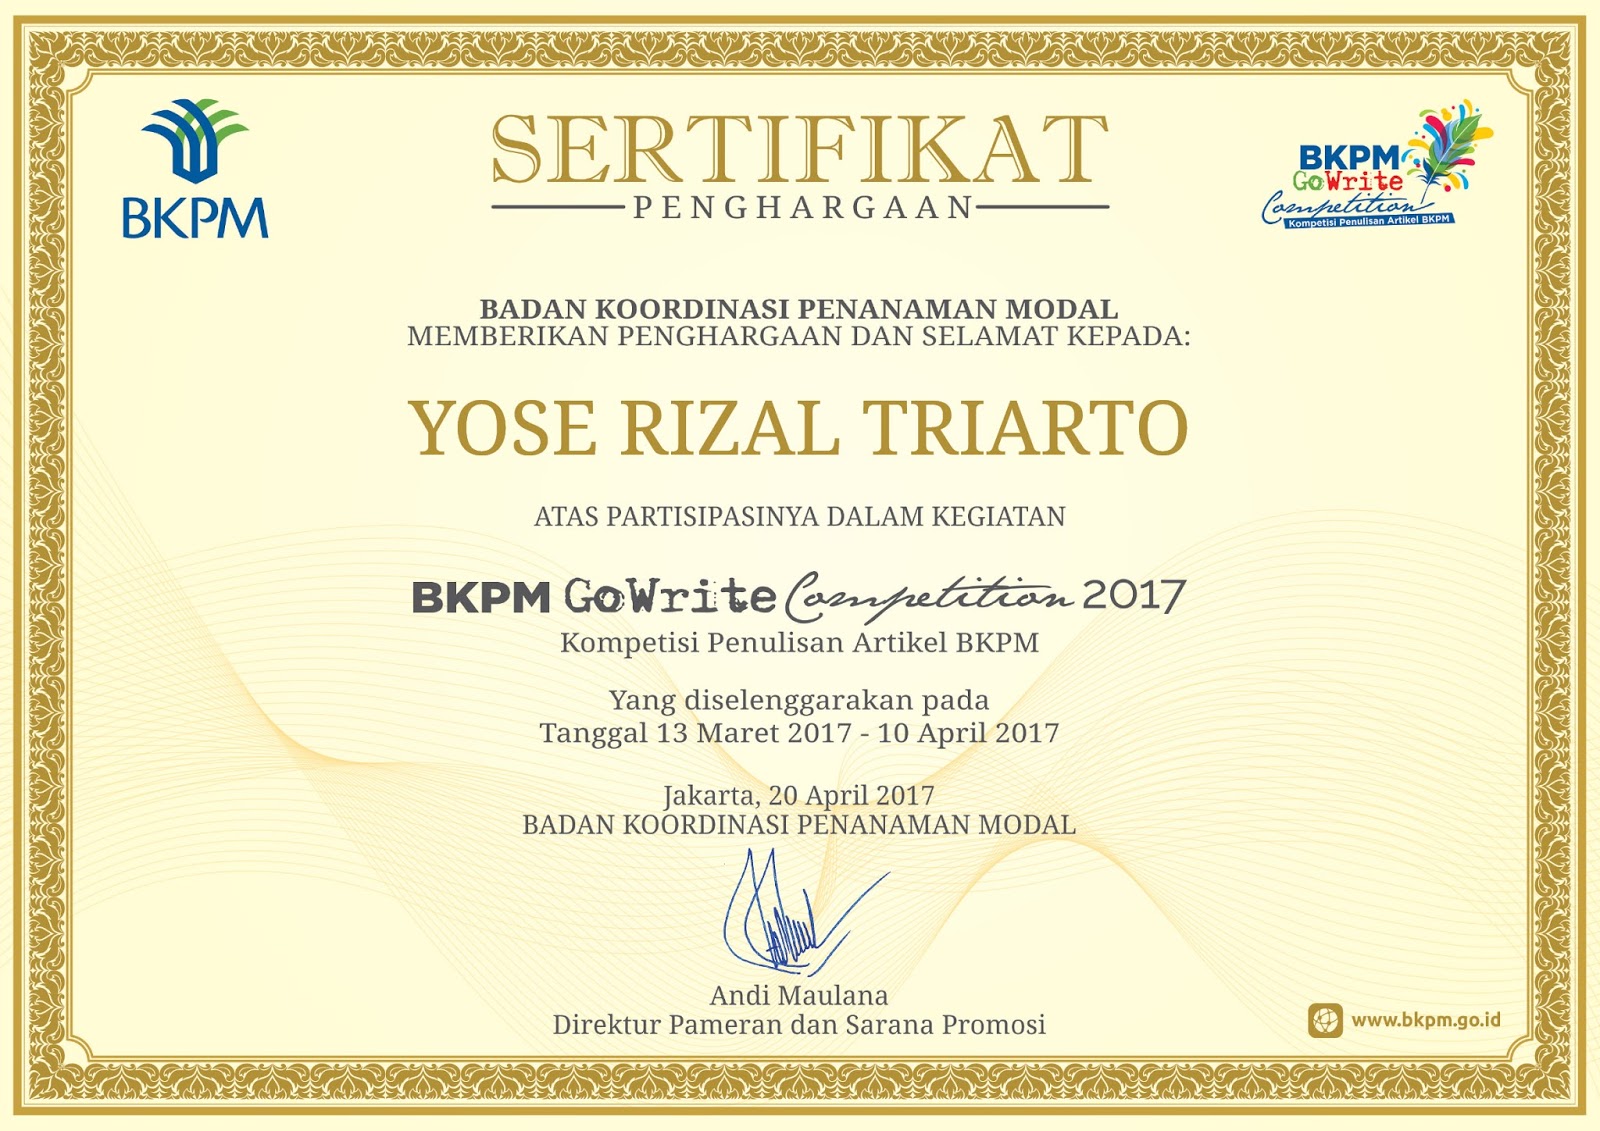 WordBrick Suit in Case Piagam Penghargaan Karya Lomba Artikel BKPM 2017 jpg (1600x1131)